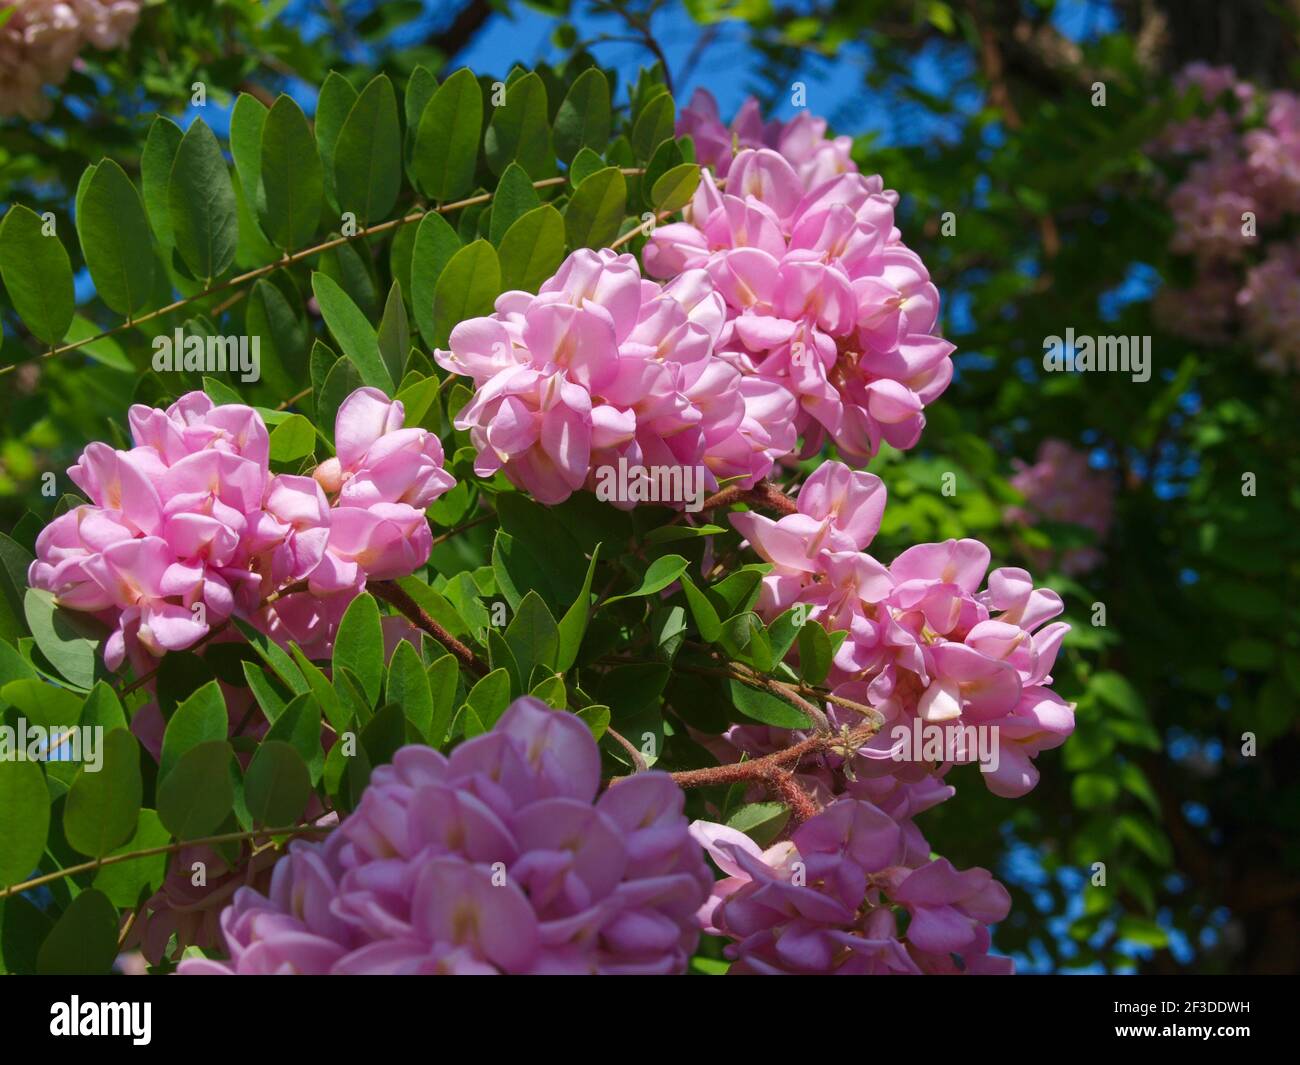 Pink blooming rose acacia tree close up. Stock Photo